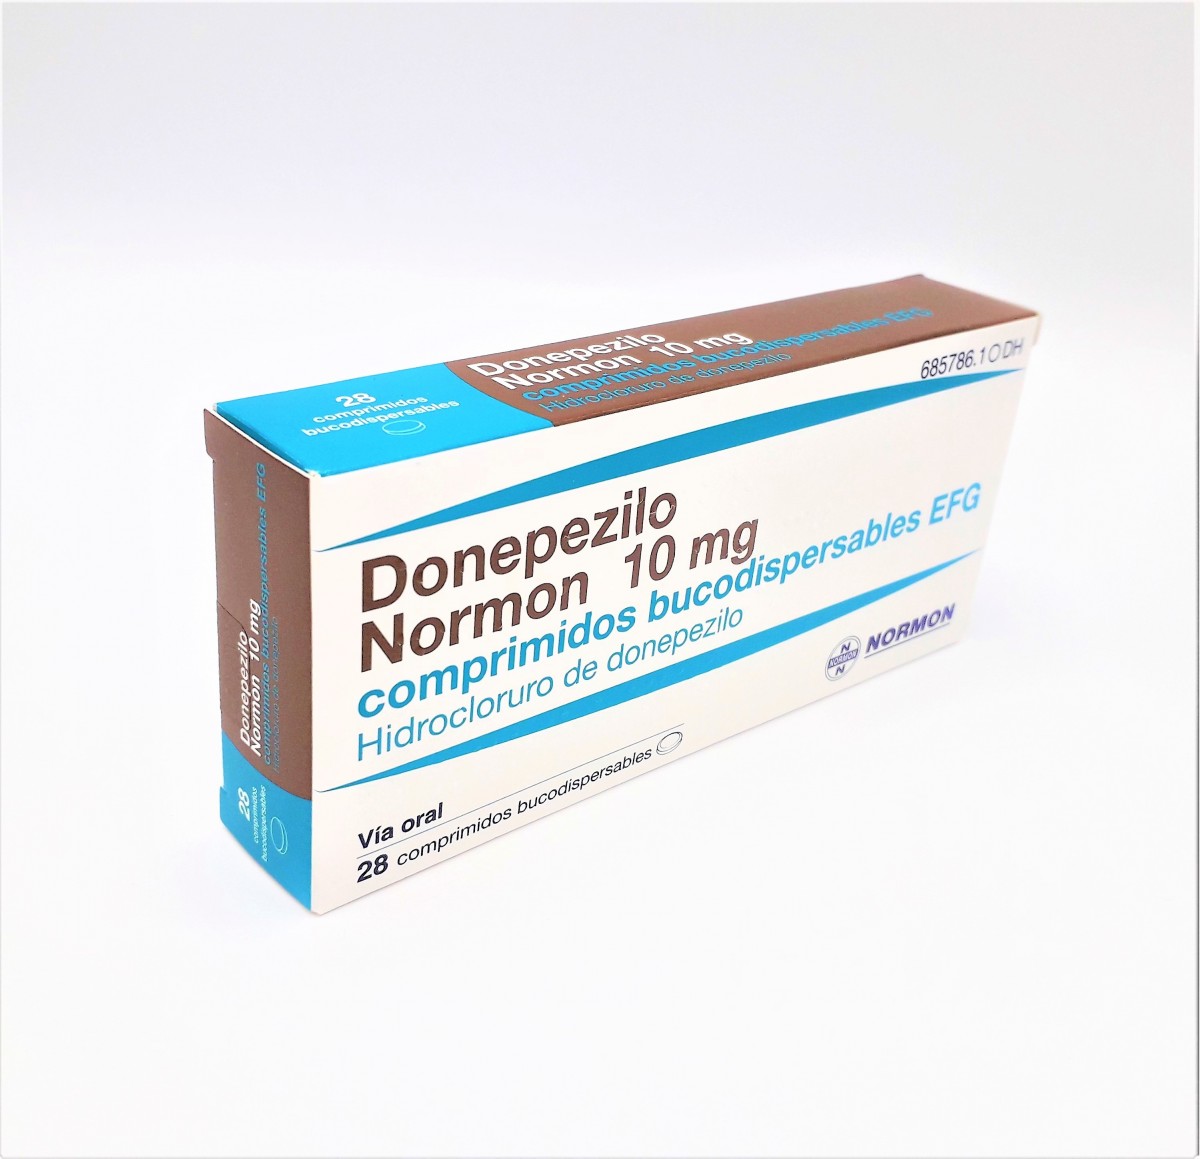 DONEPEZILO NORMON 10 mg COMPRIMIDOS BUCODISPERSABLES EFG, 28 comprimidos fotografía del envase.